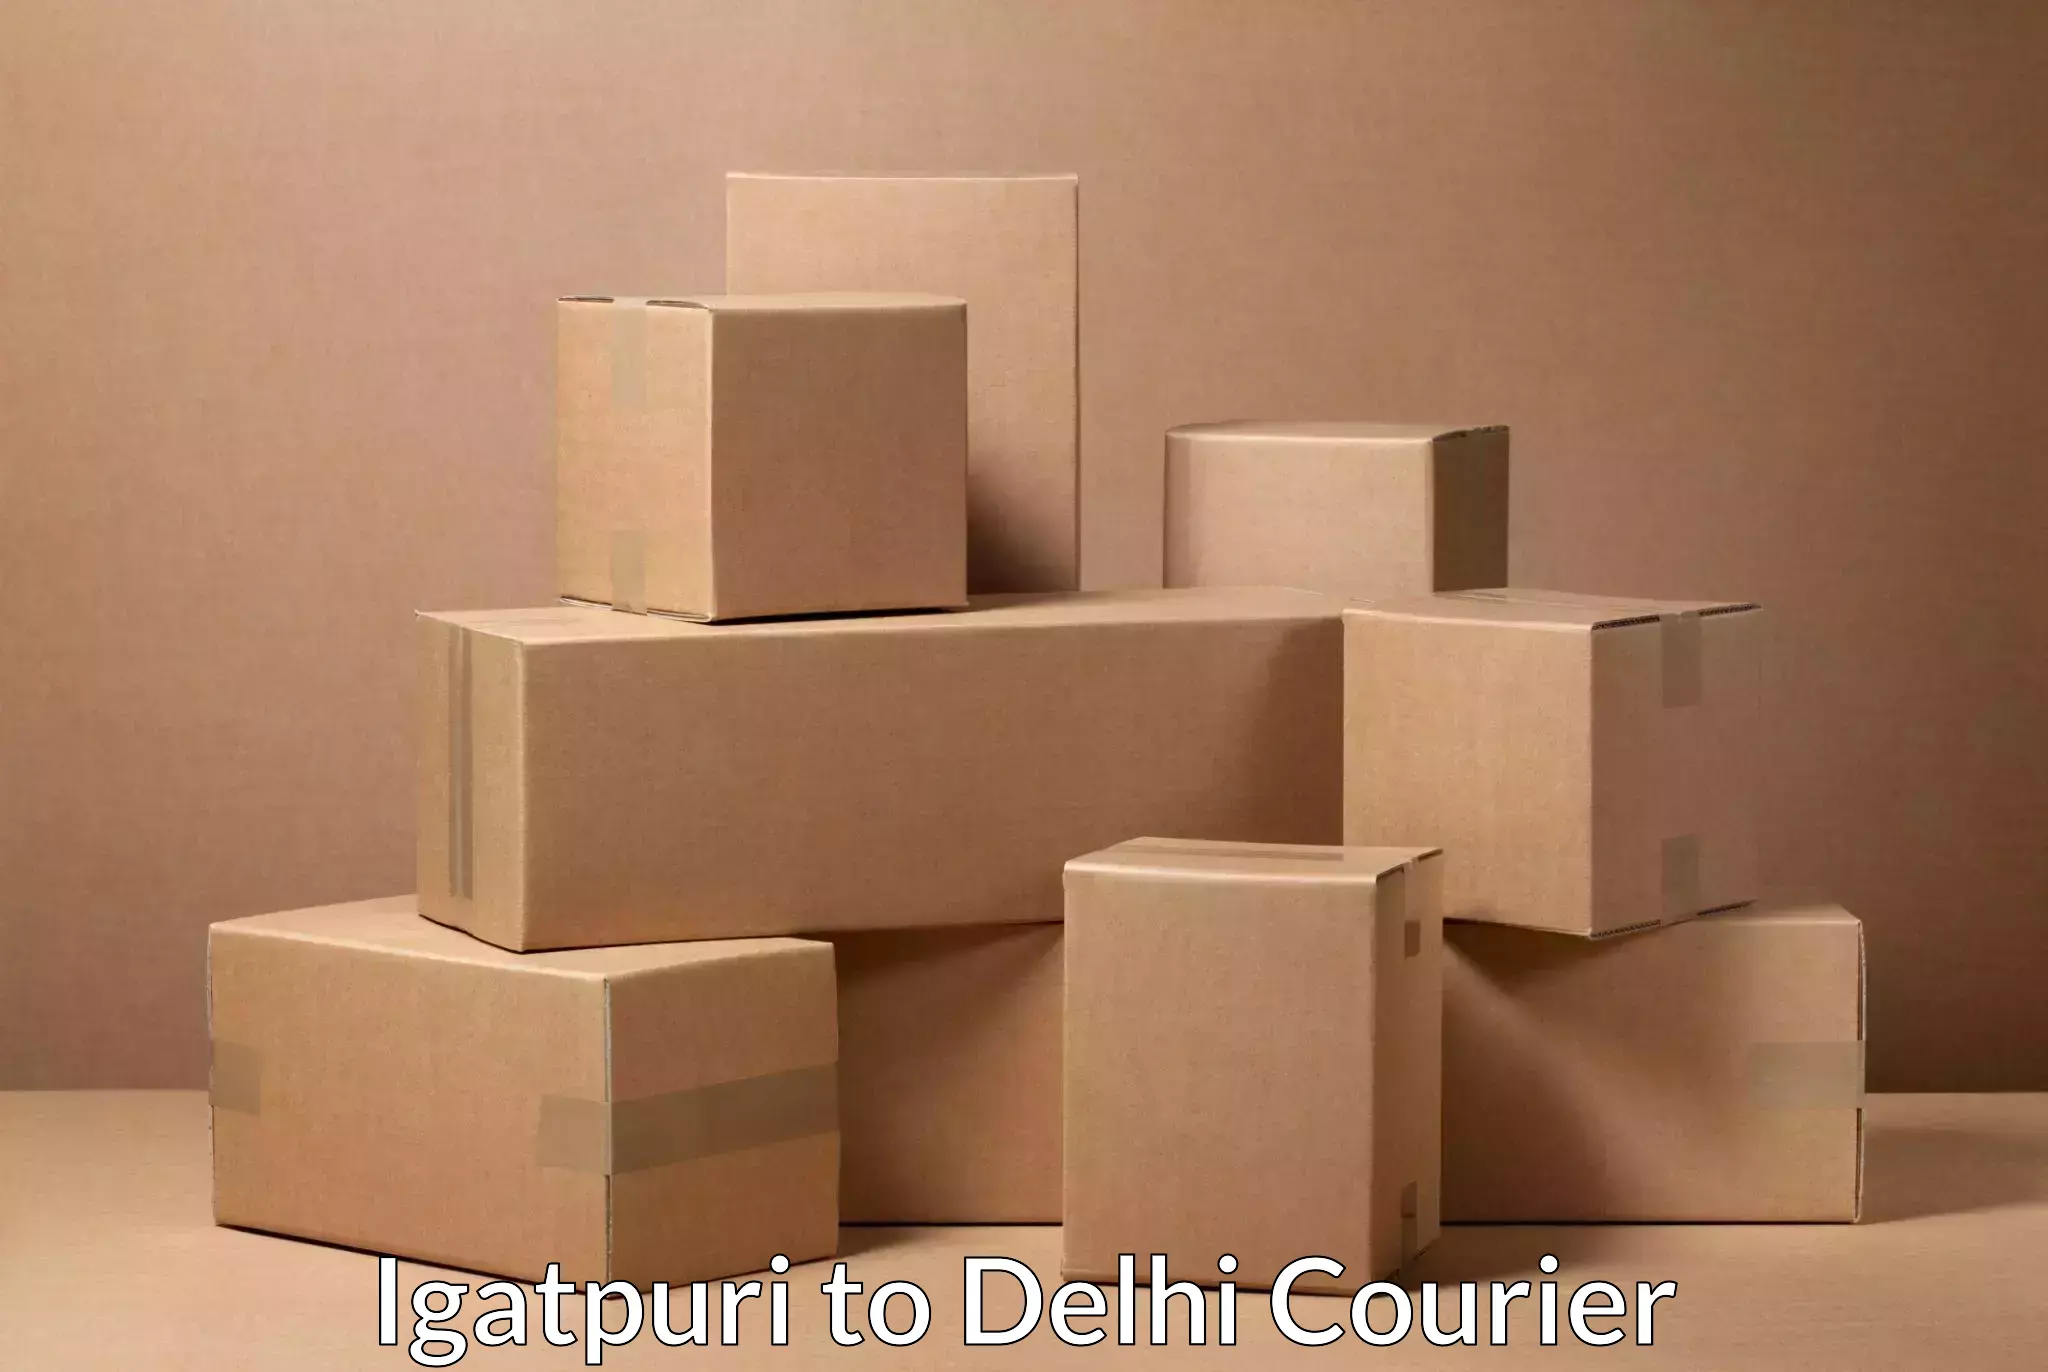 Door-to-door shipping in Igatpuri to Jawaharlal Nehru University New Delhi